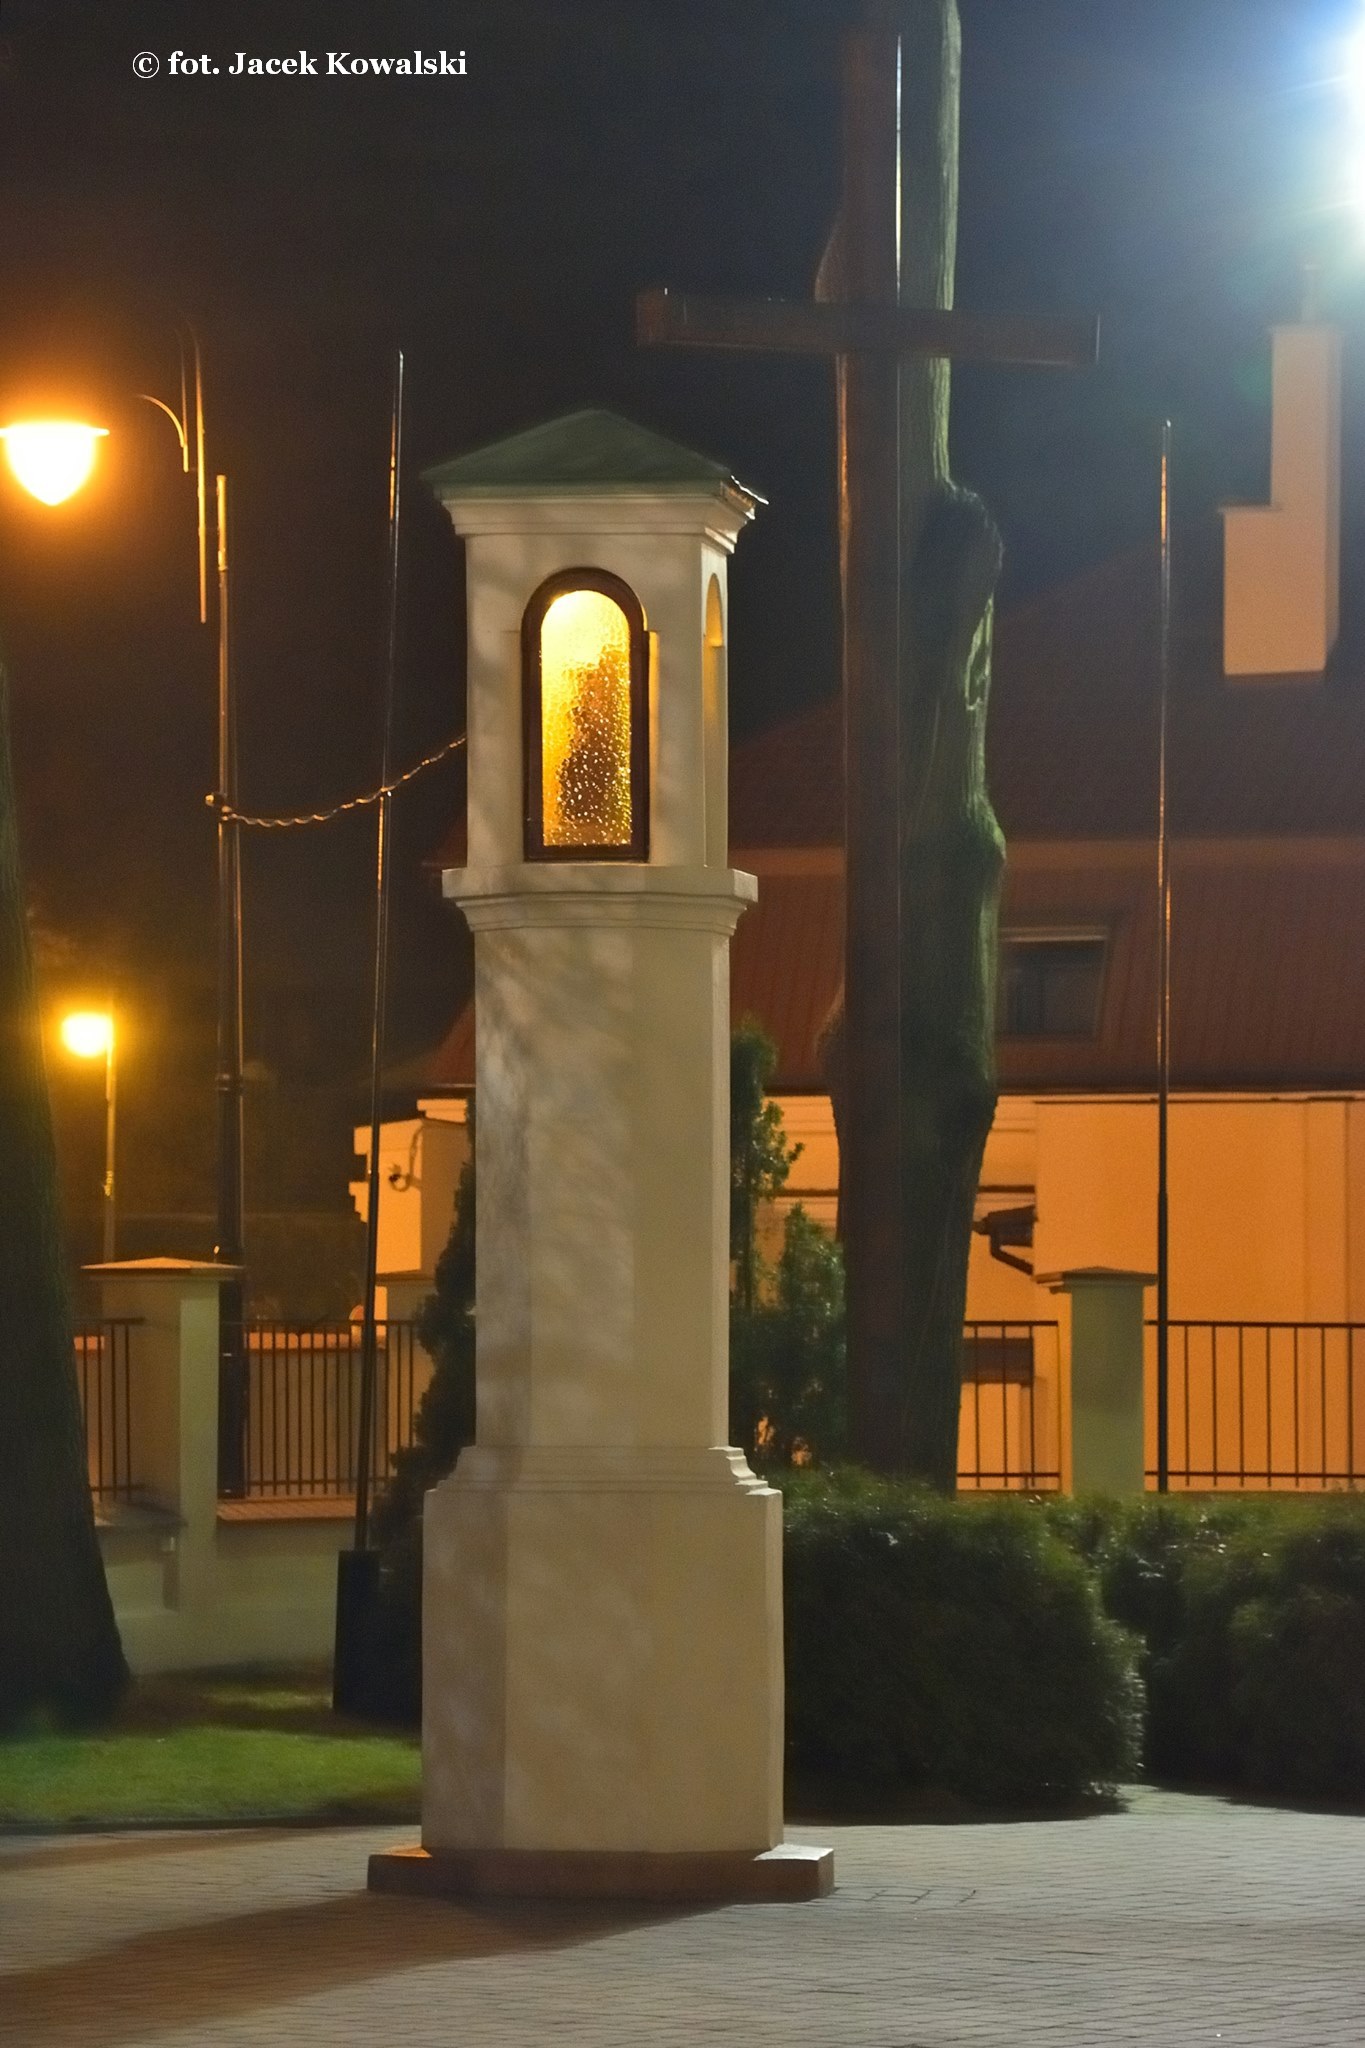 Plac i kapliczka przed Kocioem pw. w. Wita, Modesta i Krescencji, 18.11.2016 r.